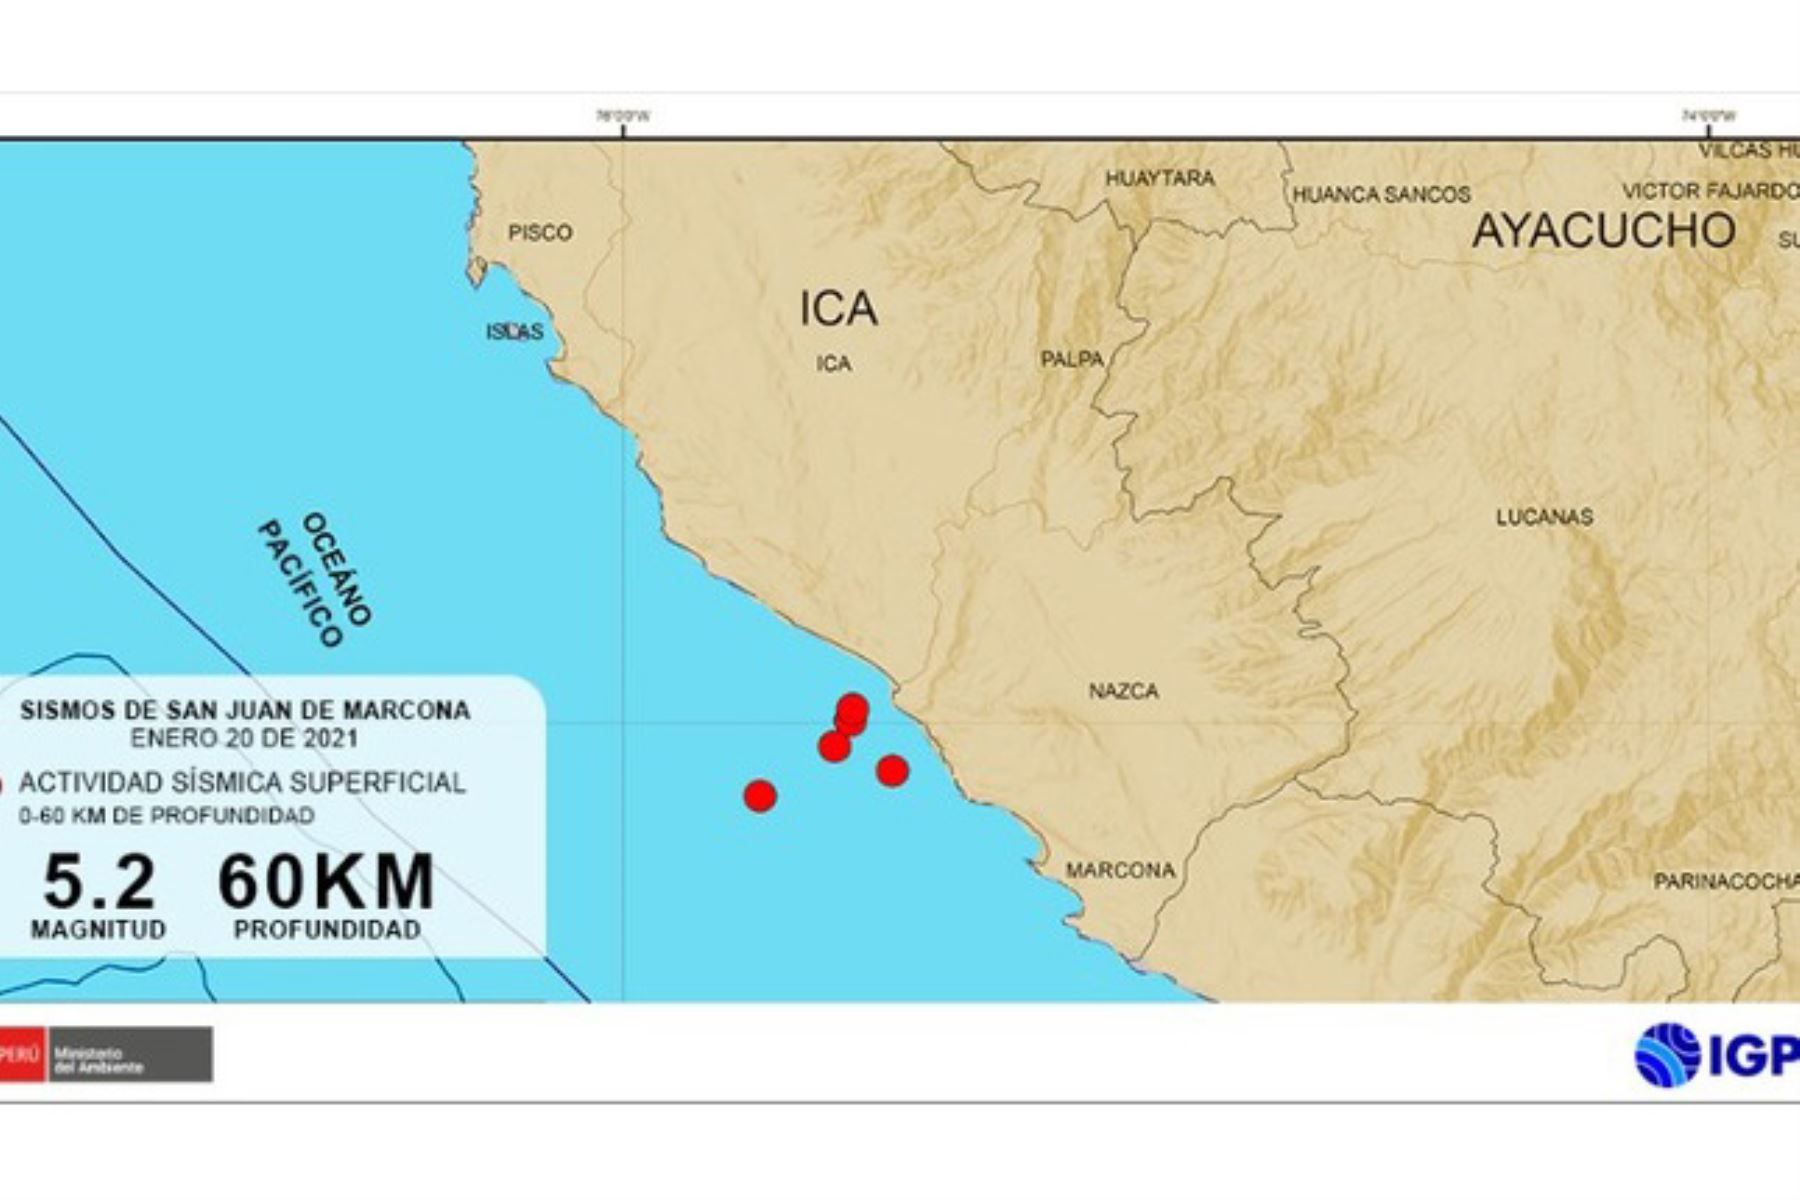 “La costa de Ica es sísmicamente la más activa de la parte occidental del país, por ello, los eventos son parte de la geodinámica de esa zona”, indicó el presidente ejecutivo del IGP, Hernando Tavera. ANDINA/IGP